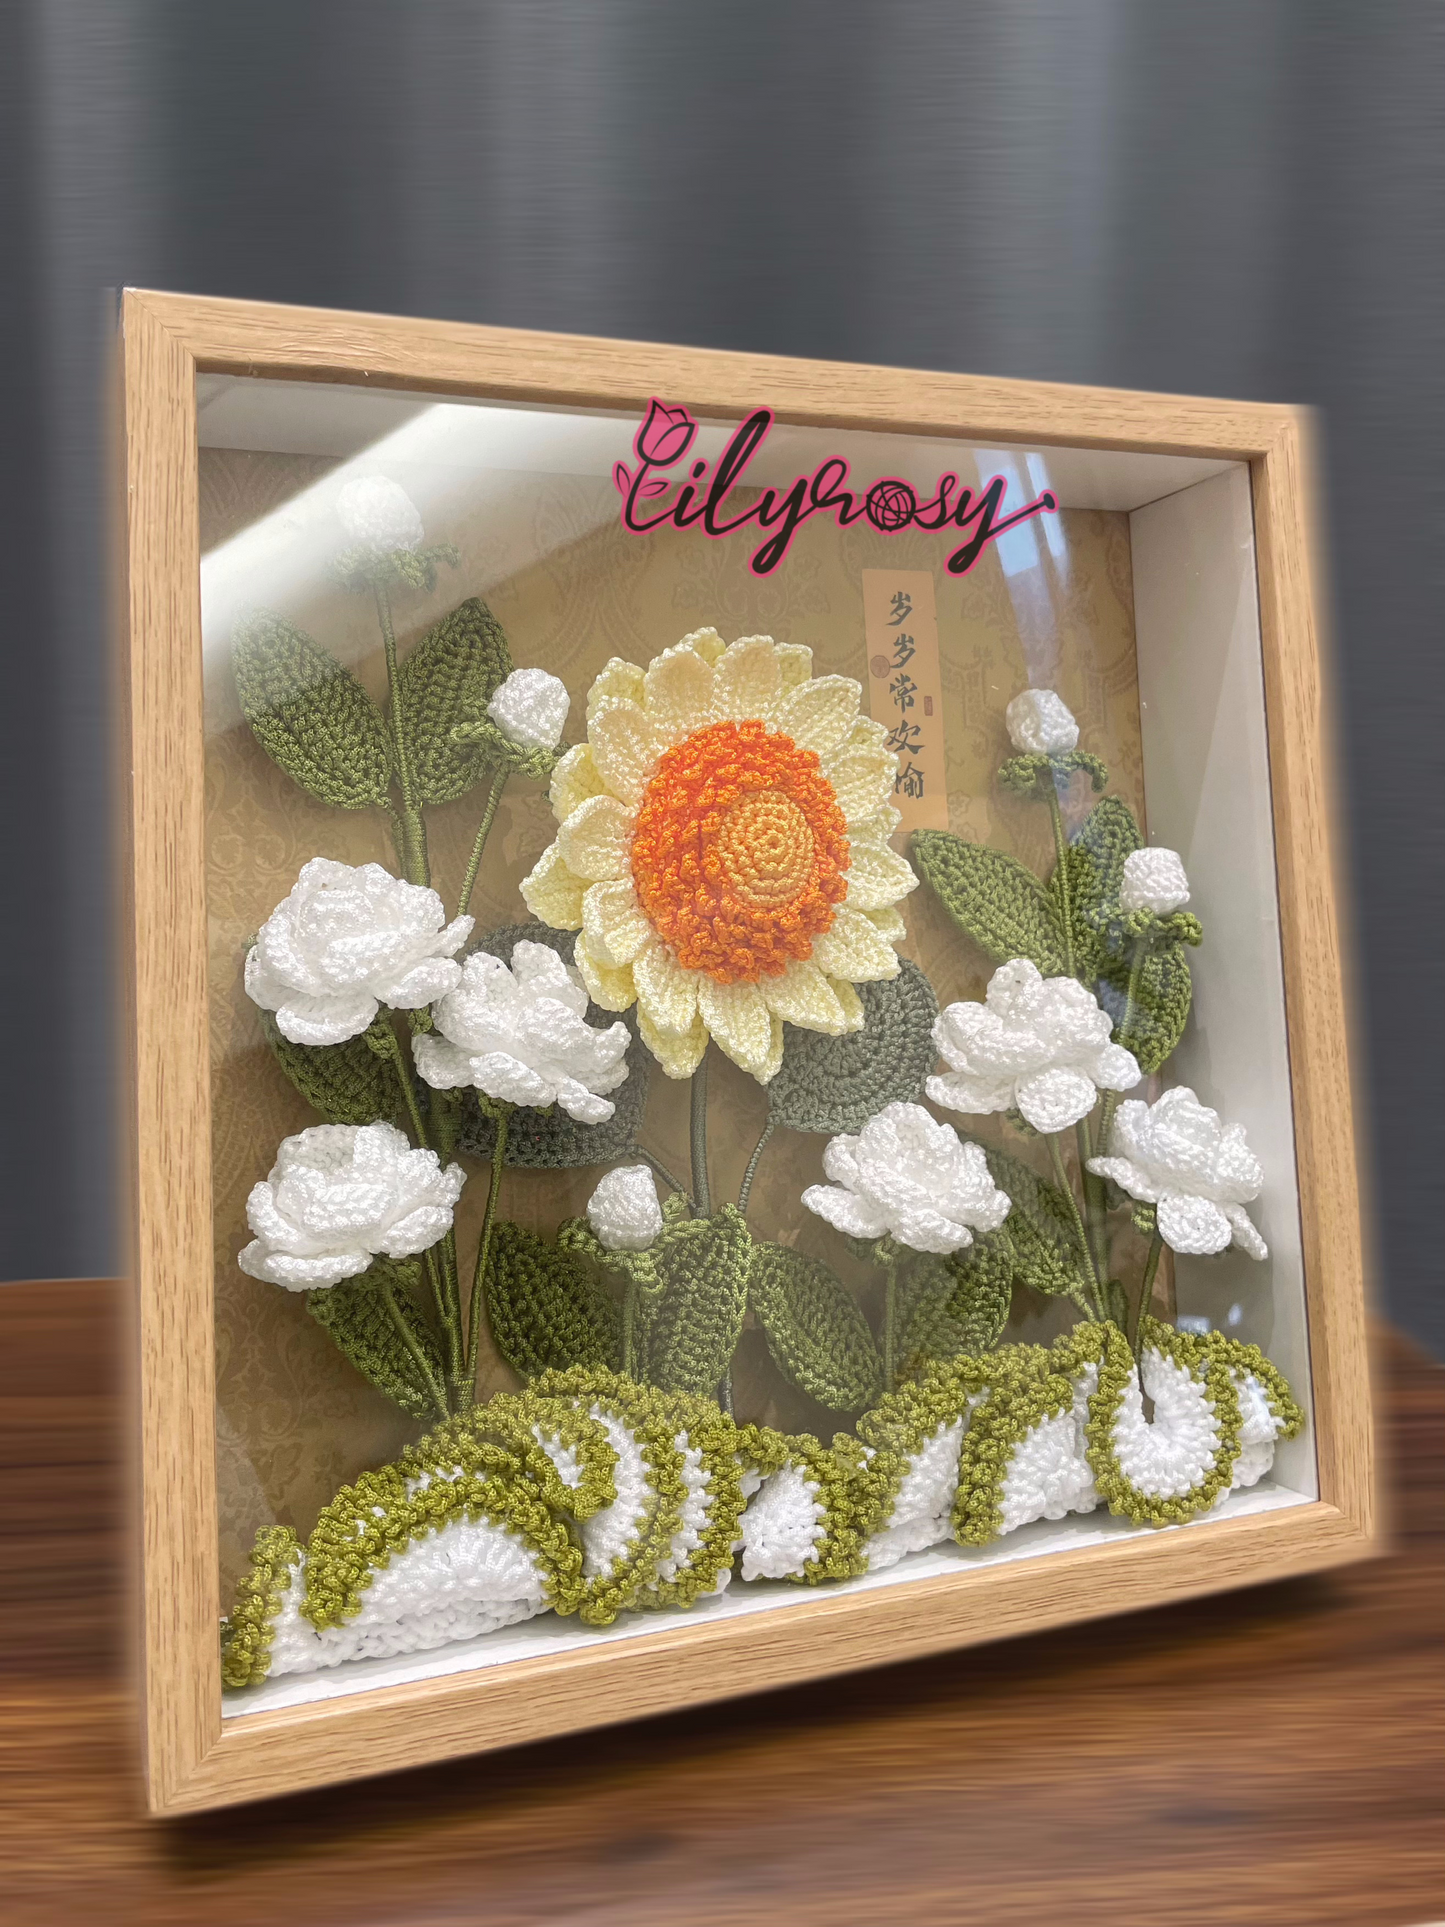 Handmade|Crochet sunflowers photo frame ,table decor, office decor,home decor